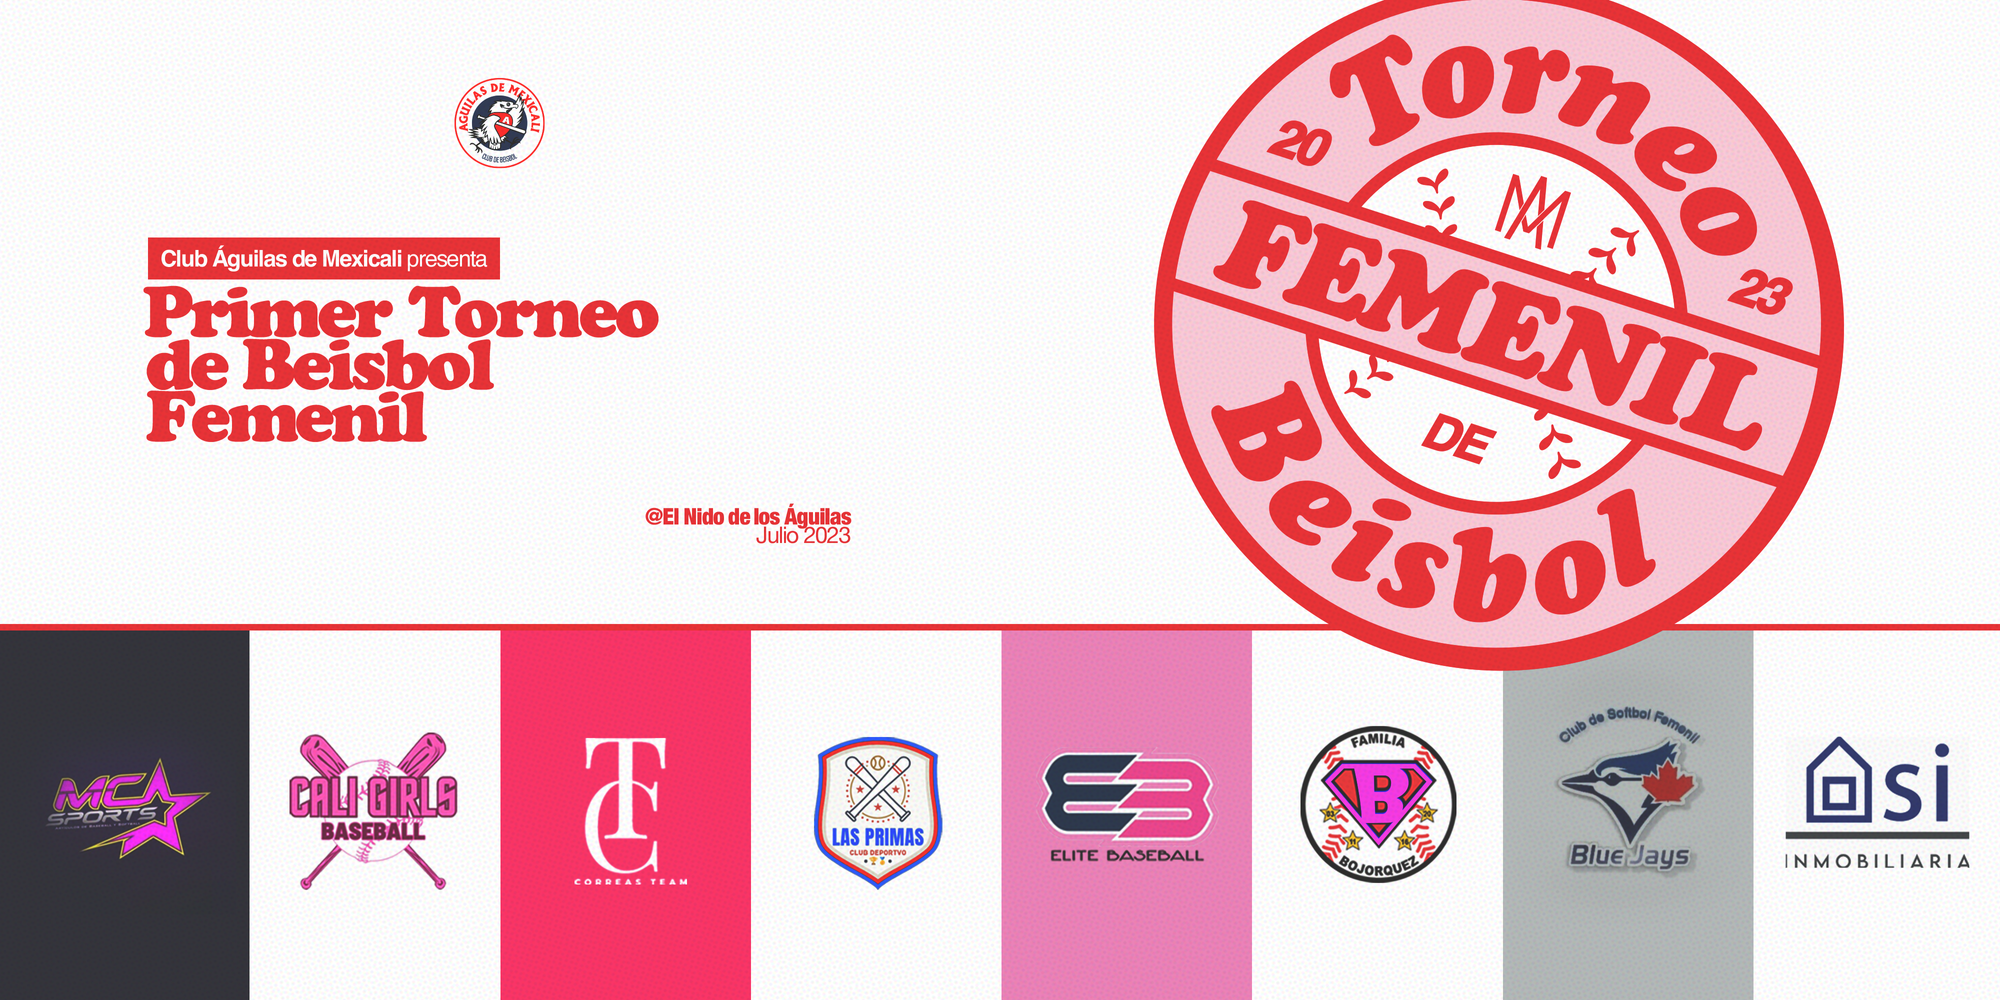 LOS ÁGUILAS PRESENTARON EL PRIMER TORNEO DE BEISBOL FEMENIL